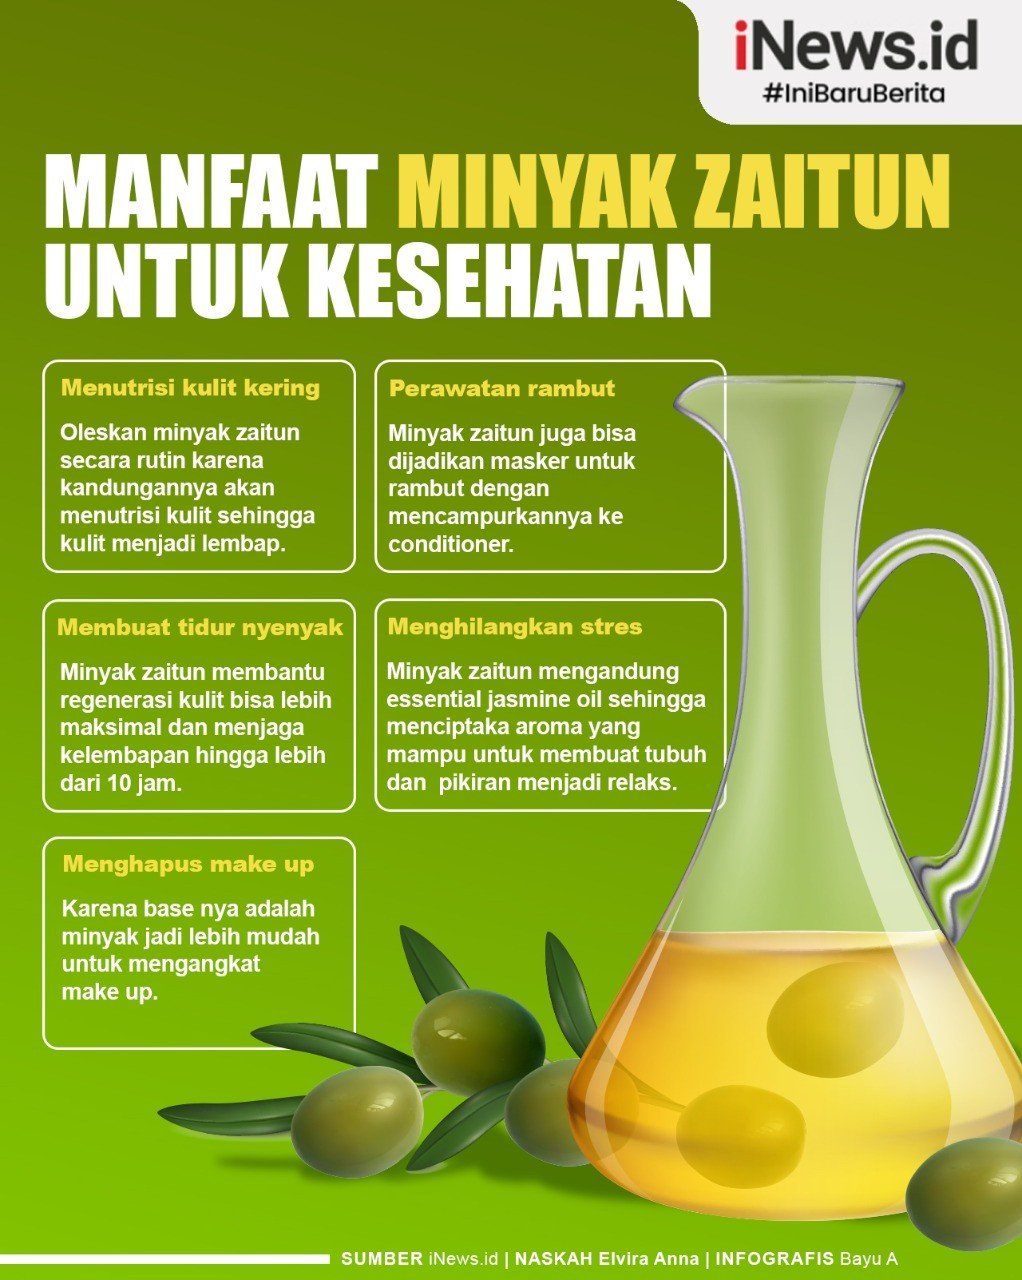 Infografis Manfaat minyak zaitun untuk kesehatan. (Foto: Grafis iNews.id)